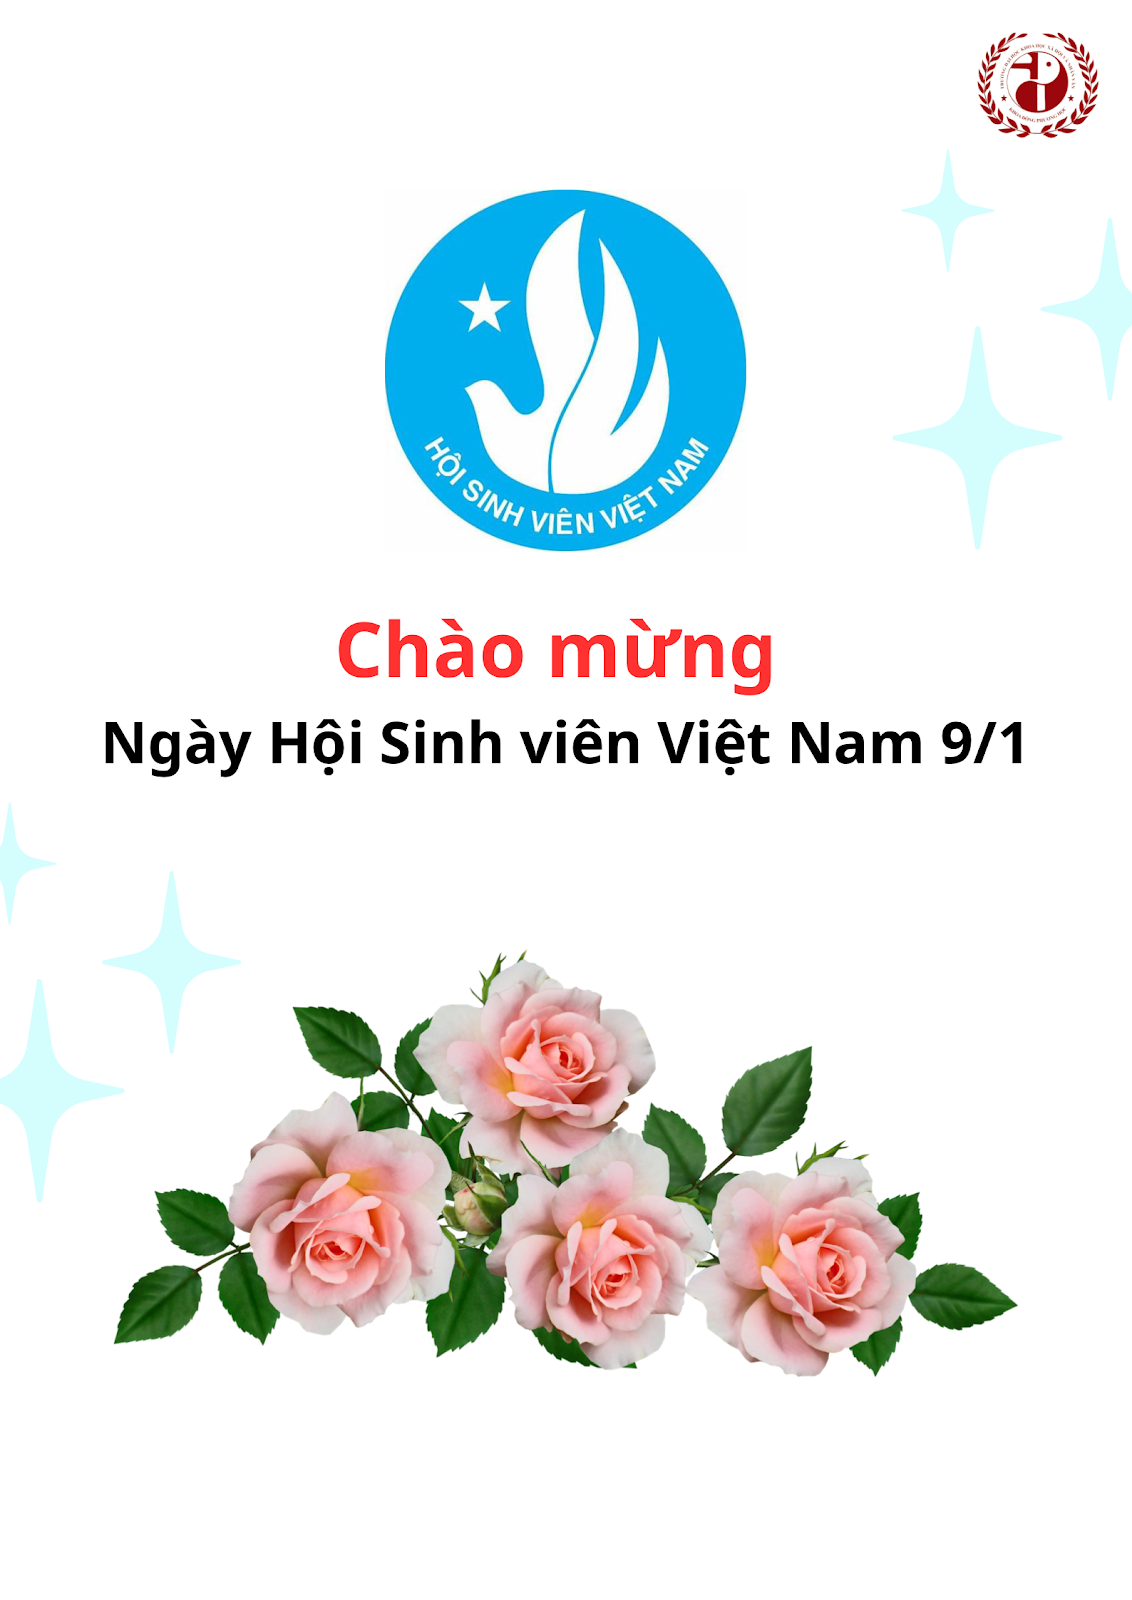 Chào mừng Ngày Hội sinh viên Việt Nam - 9/1